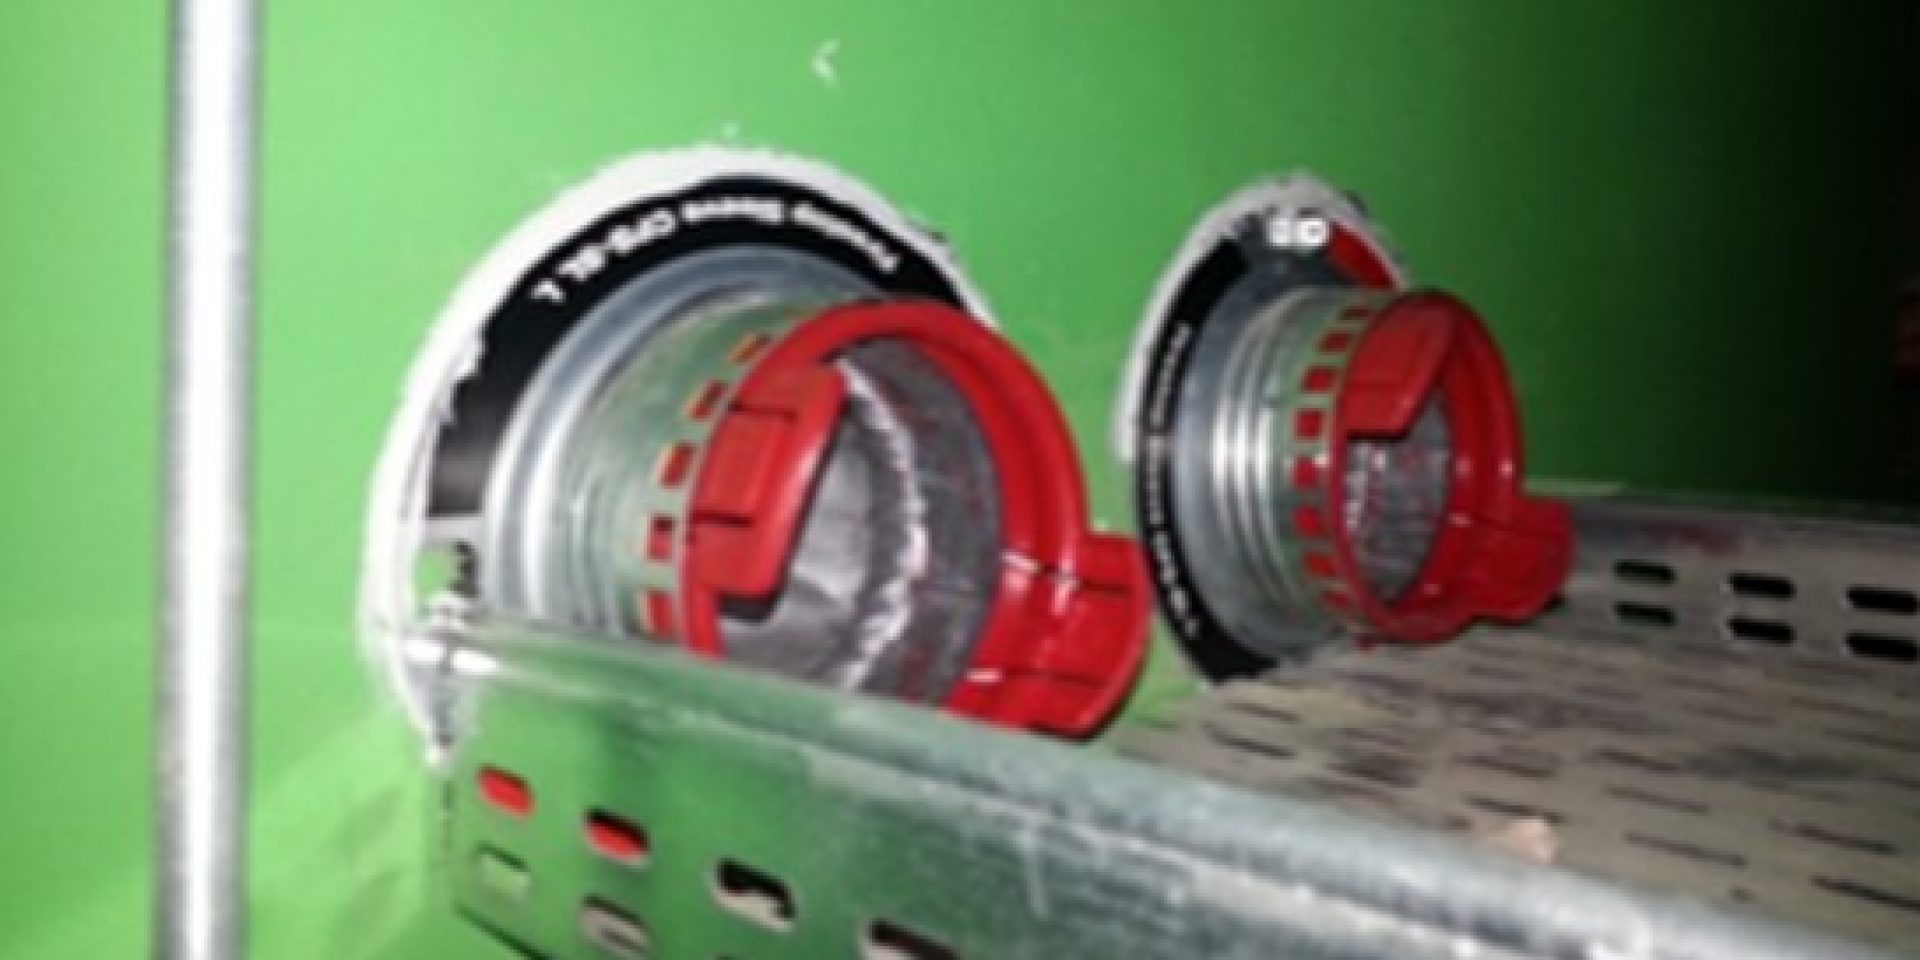 Zabezpiecznie kabli systemem biernej ochrony przeciwpożarowej Hilti